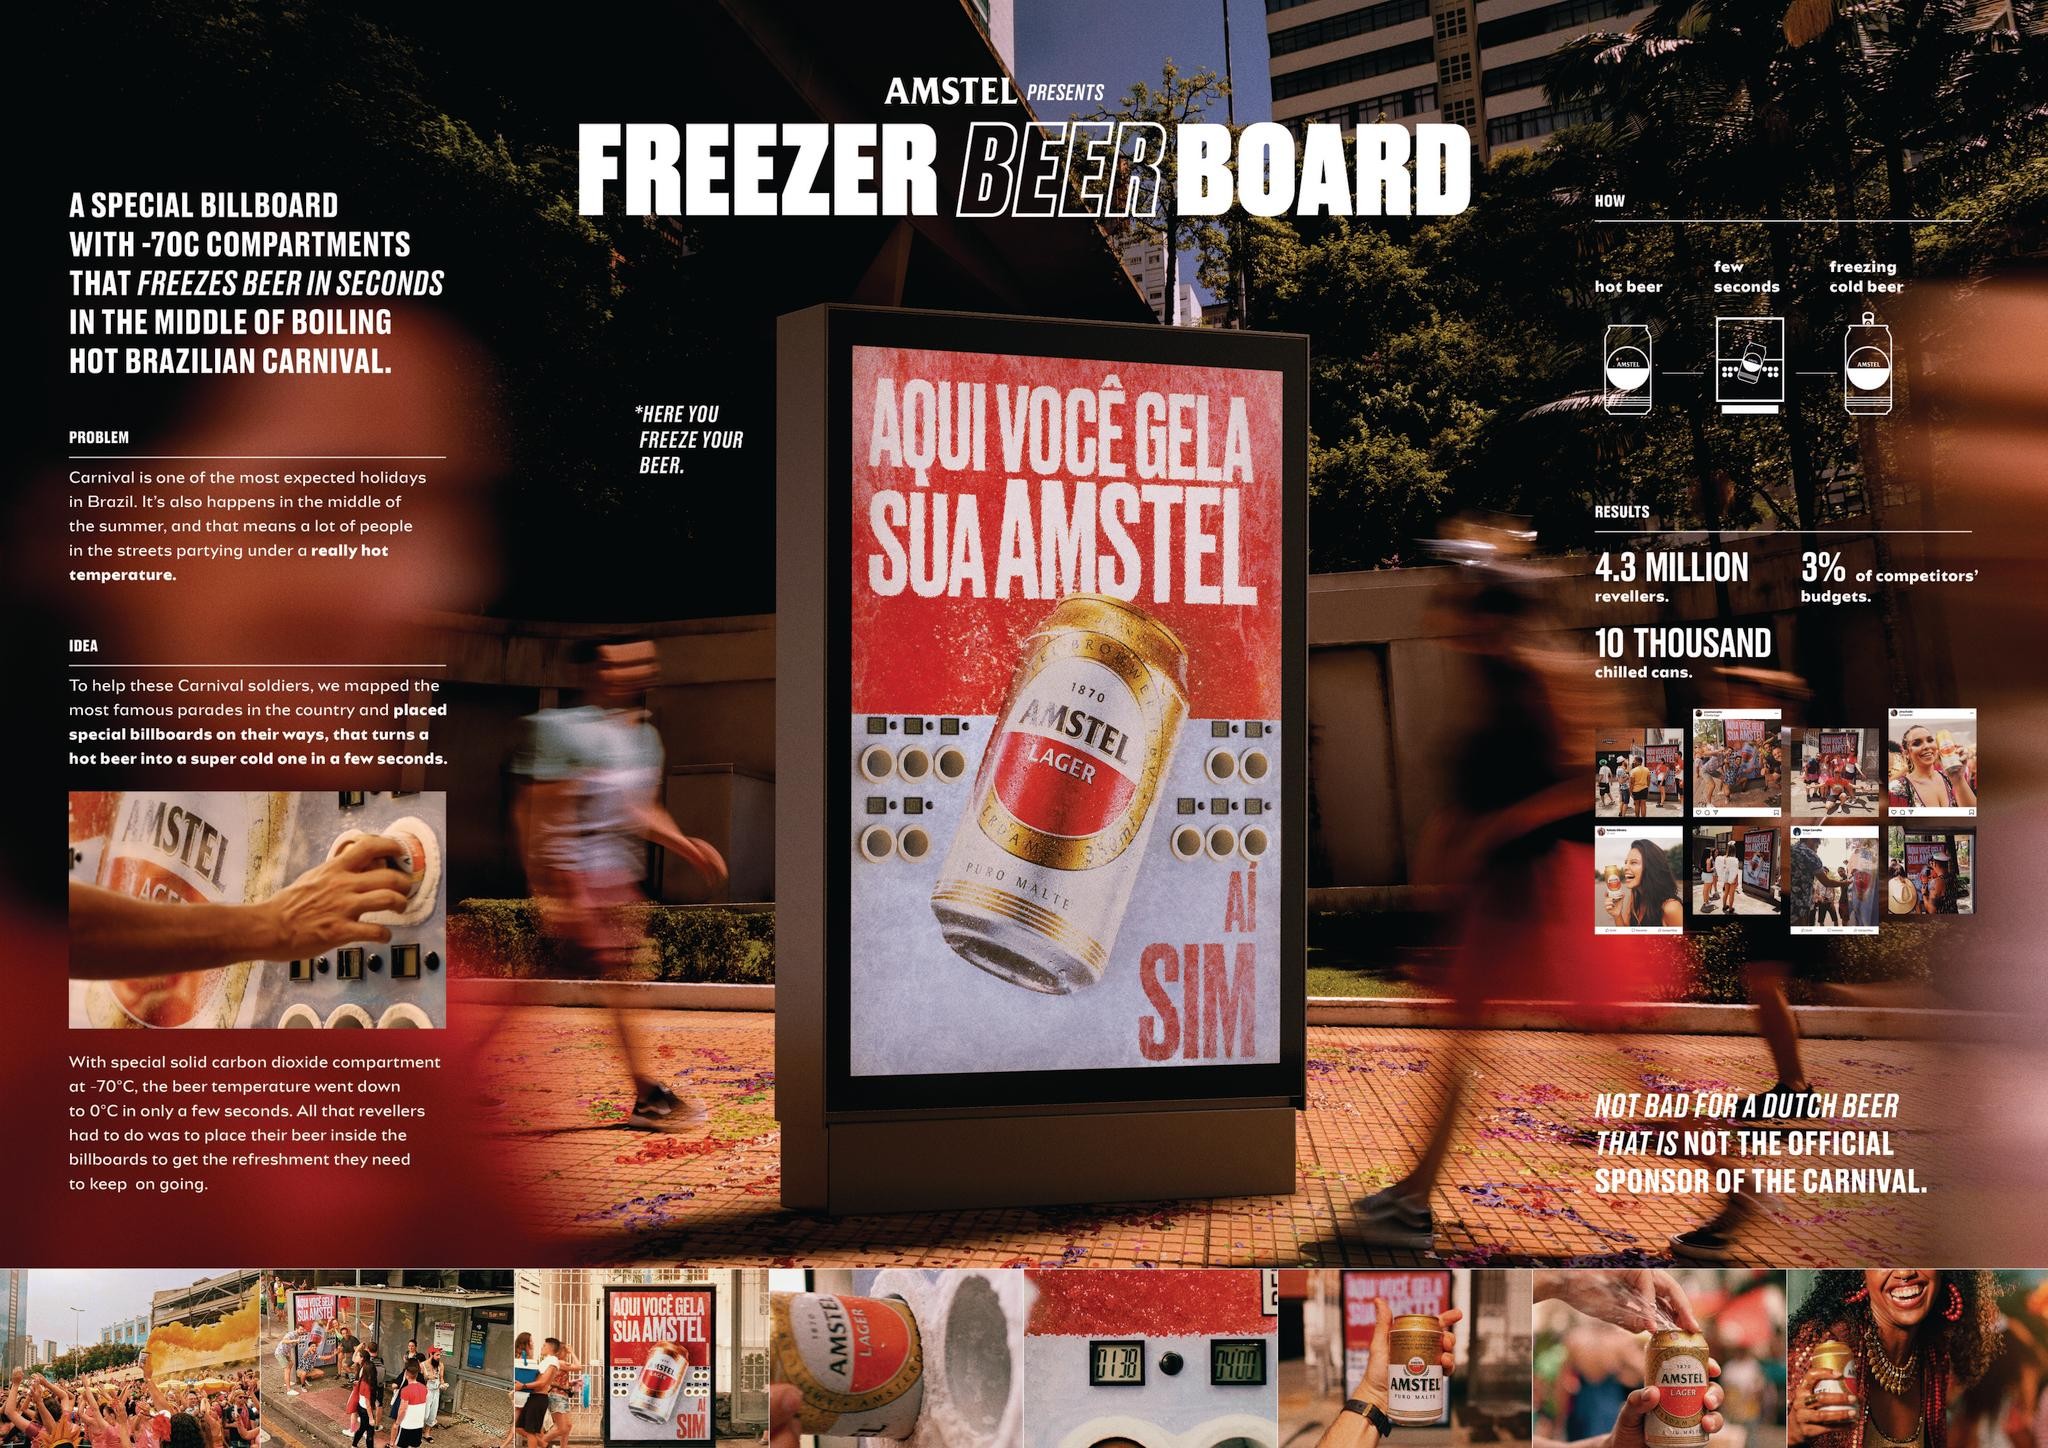 Freezer Beerboard